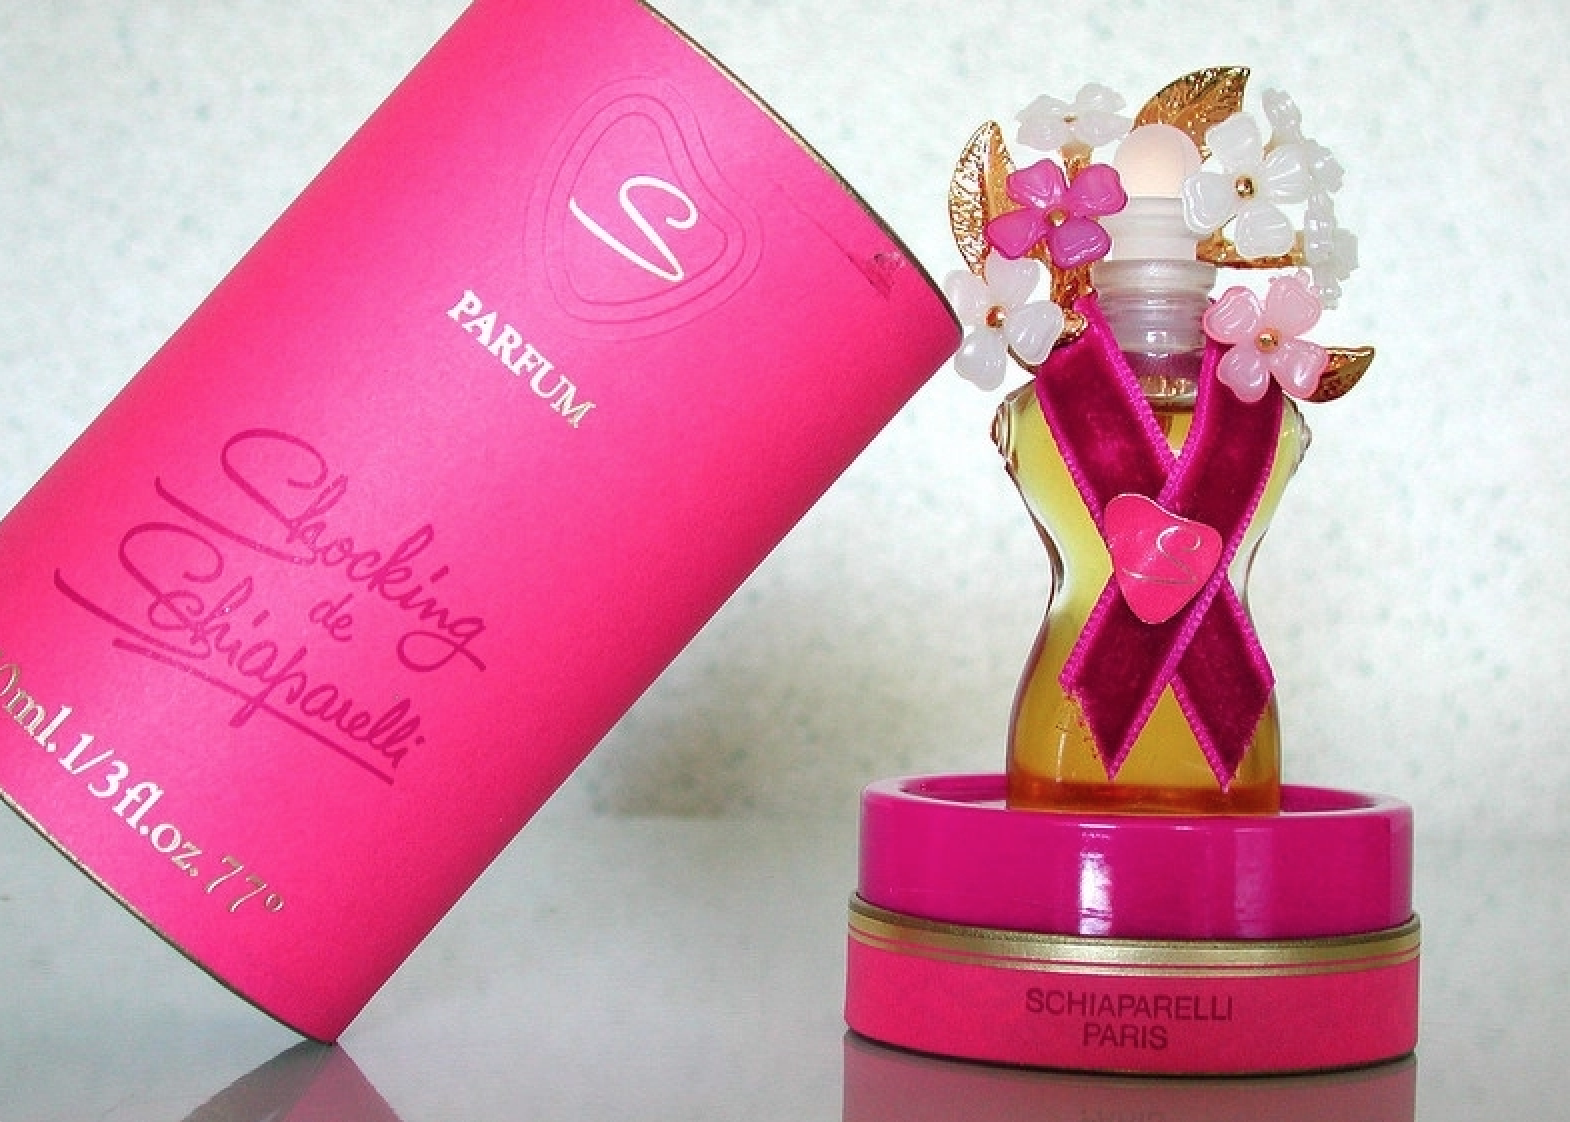 Embalaža parfuma, ki je krstil rožnati pigment / Foto: Reprodukcija